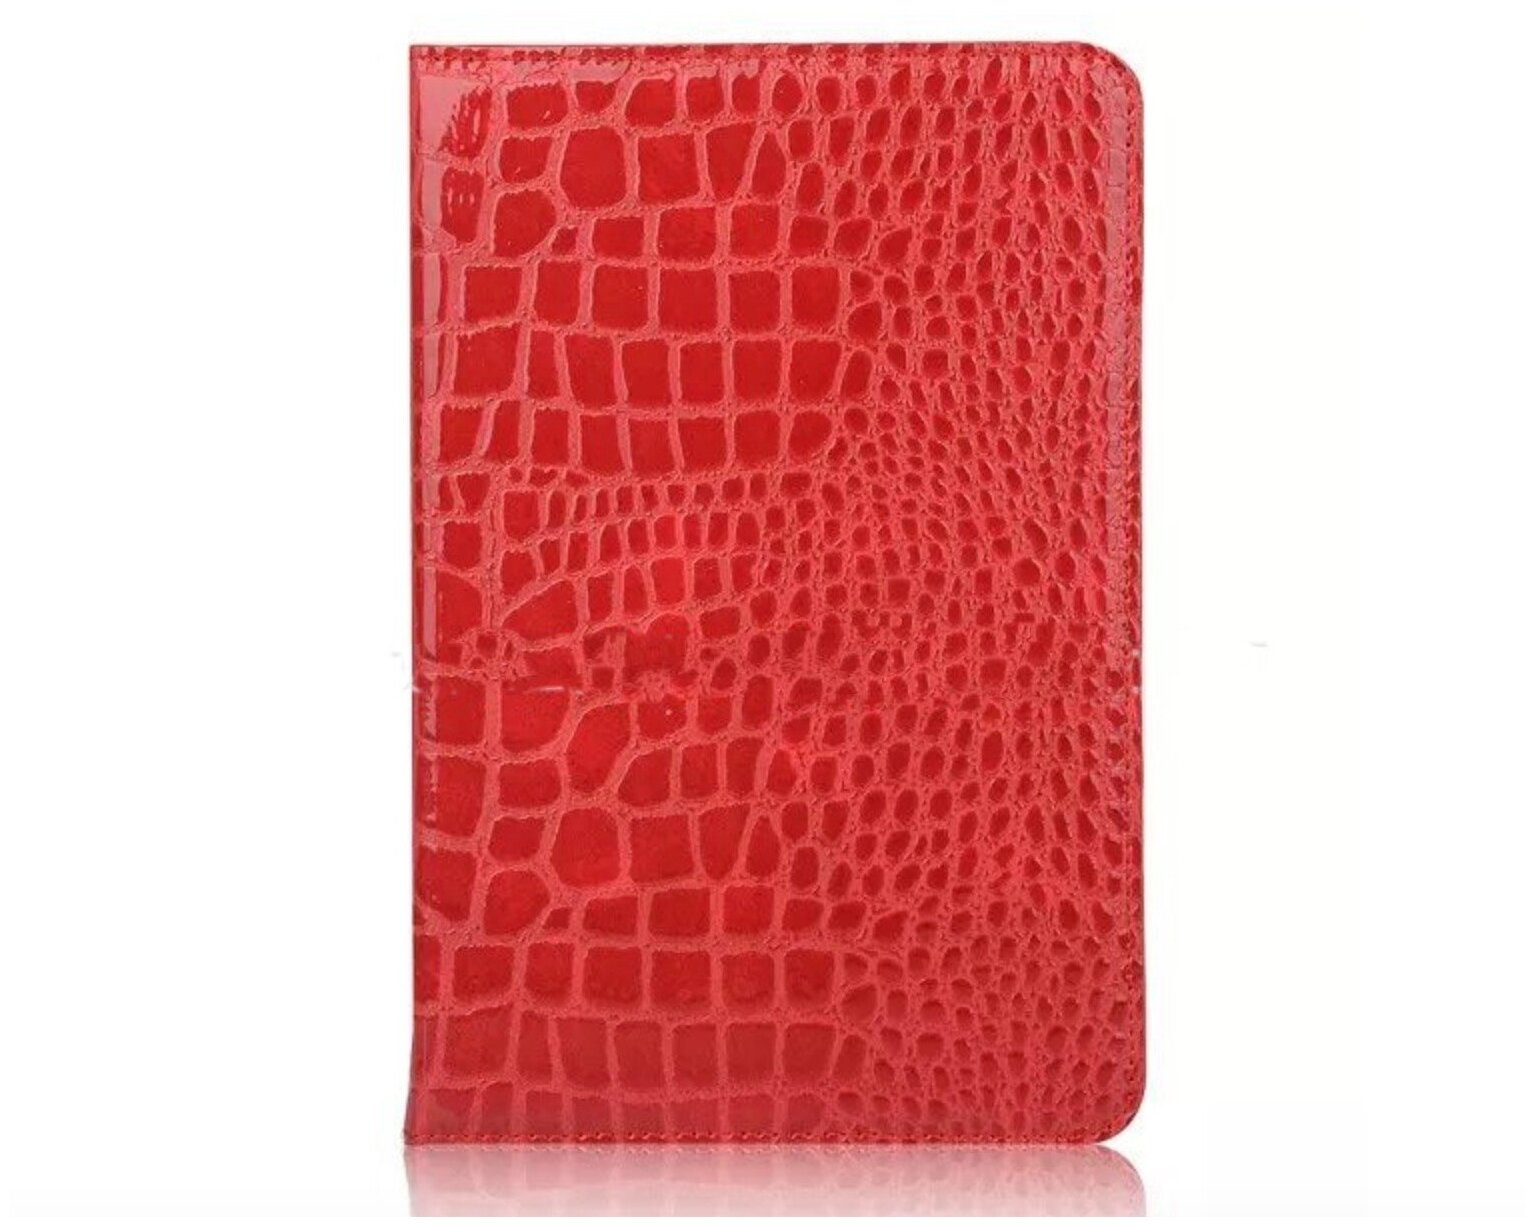 Чехол-футляр MyPads для планшета Samsung Galaxy Tab A 8.0 (2019) SM-T290 / T295 из лаковой рельефной кожи под крокодила алый огненный красный